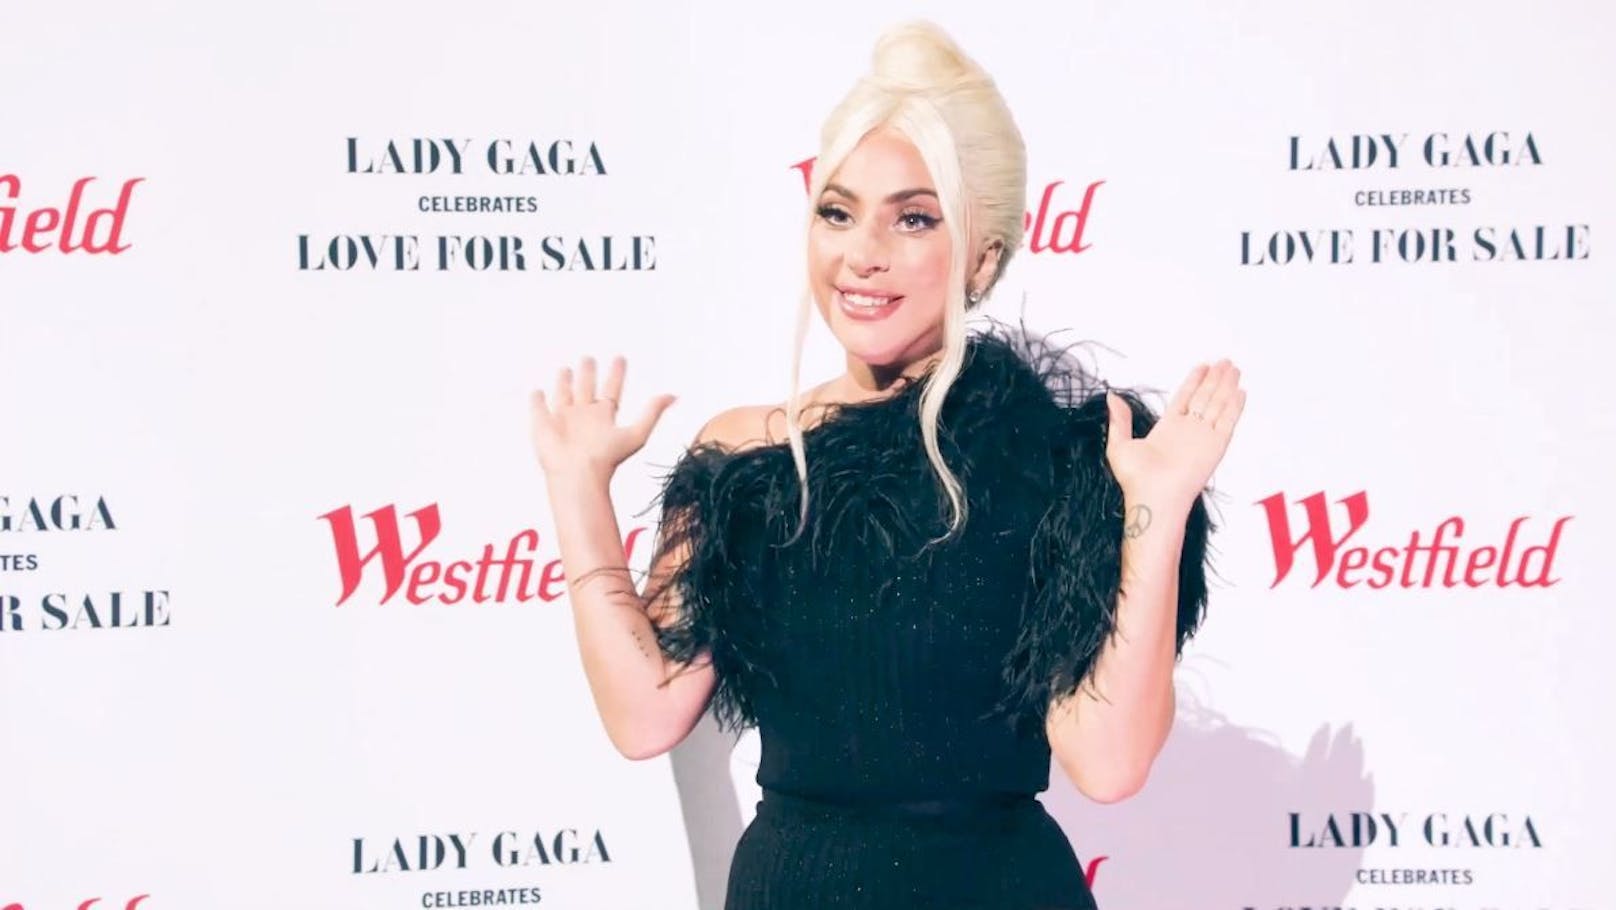 Lady Gaga verrät Geheimnis über ihre Schwester